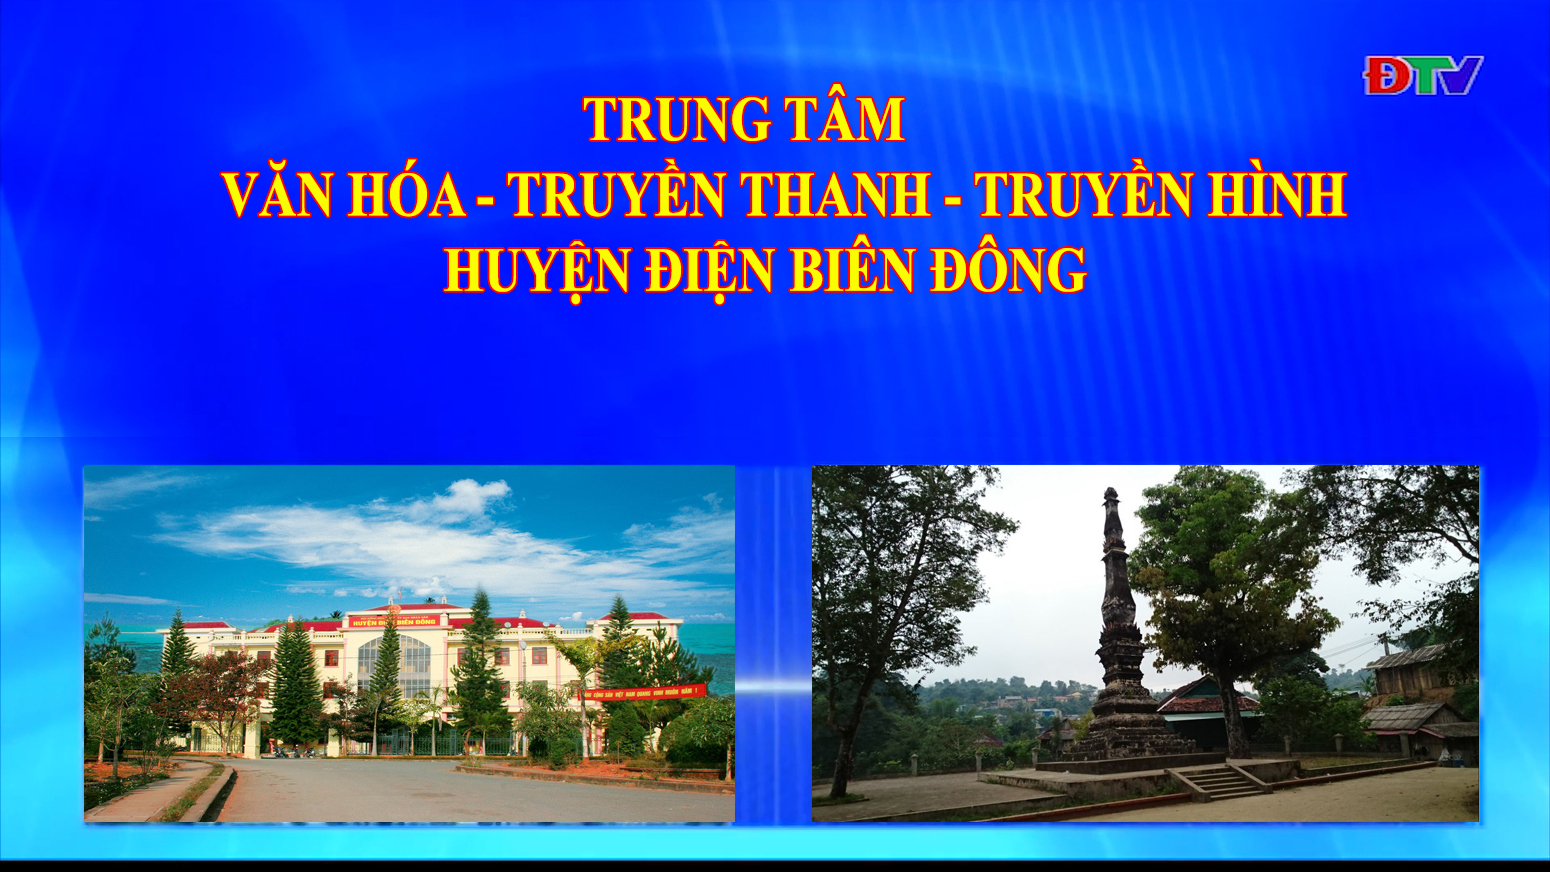 Trung tâm VH-TTTH huyện Điện Biên Đông (Ngày 7-11-2020)